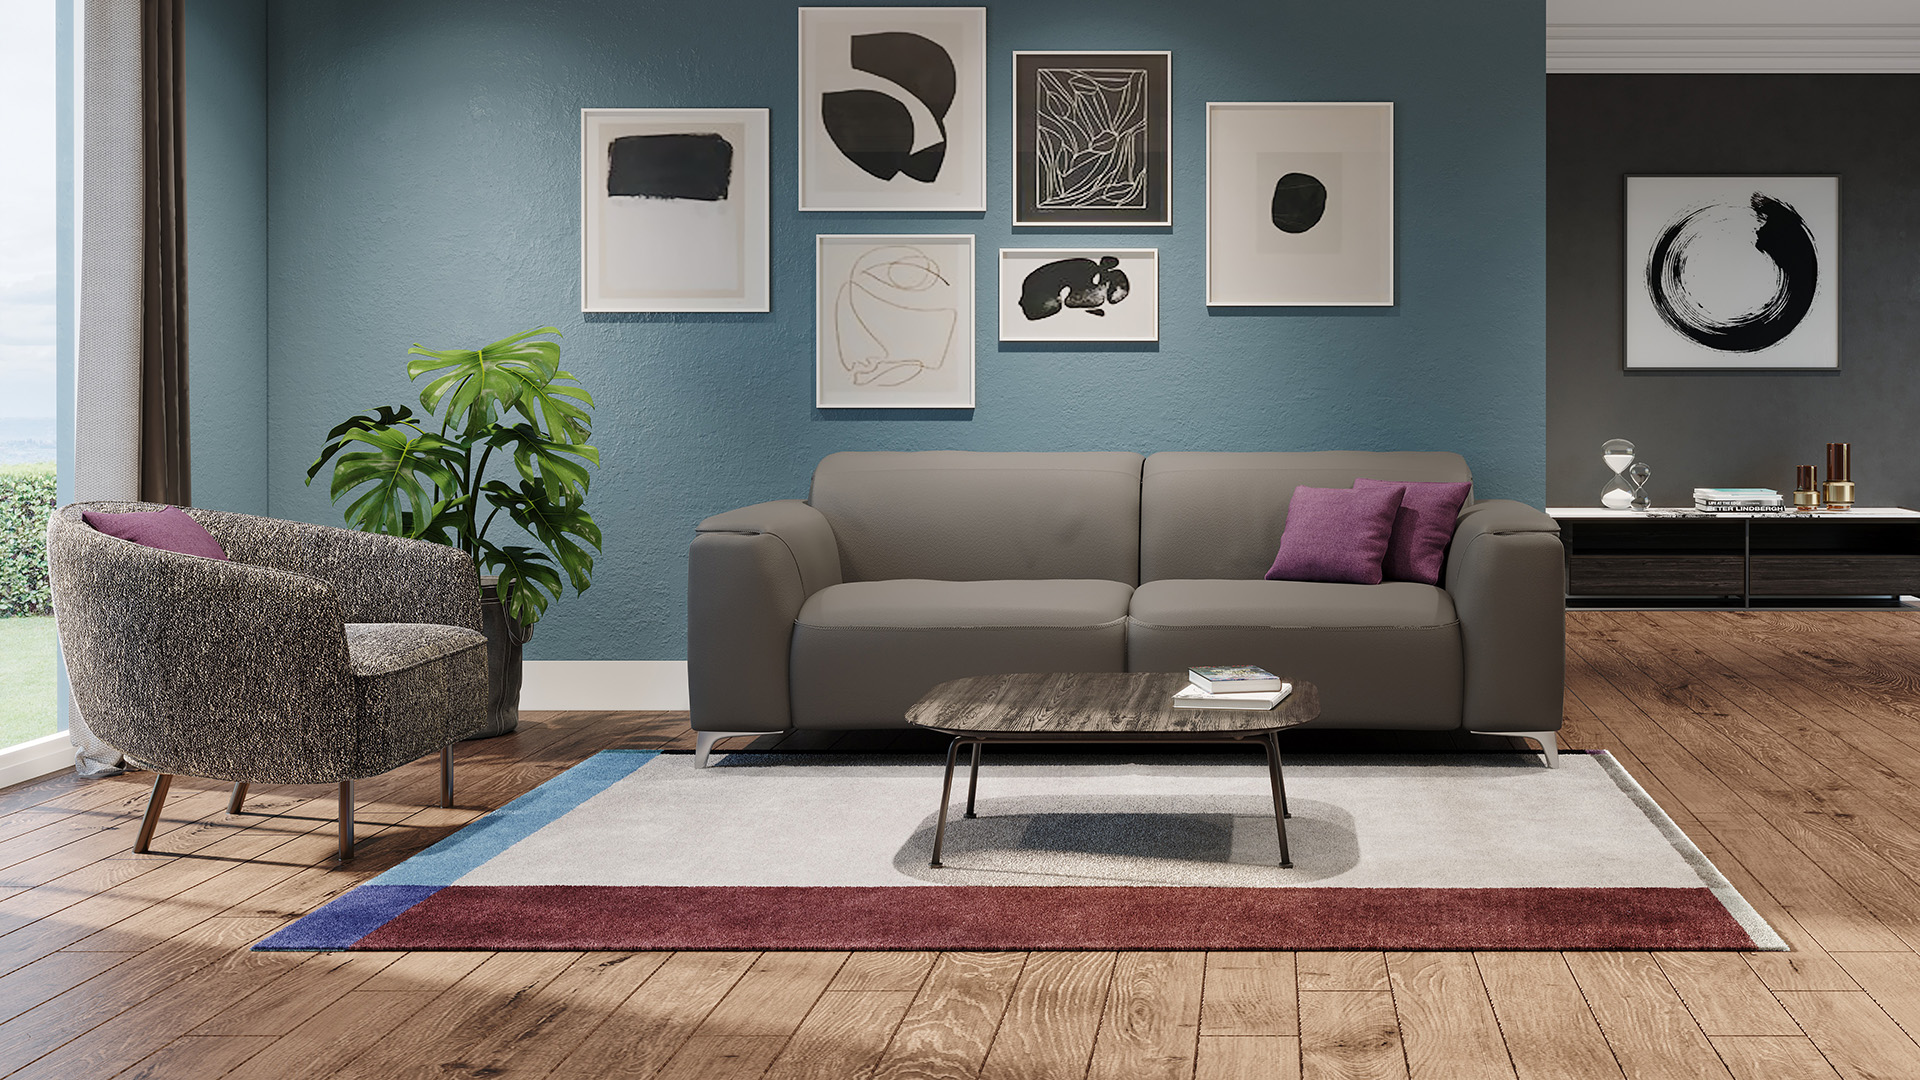 Trionfo three-seater sofa - Interior Spaces Design